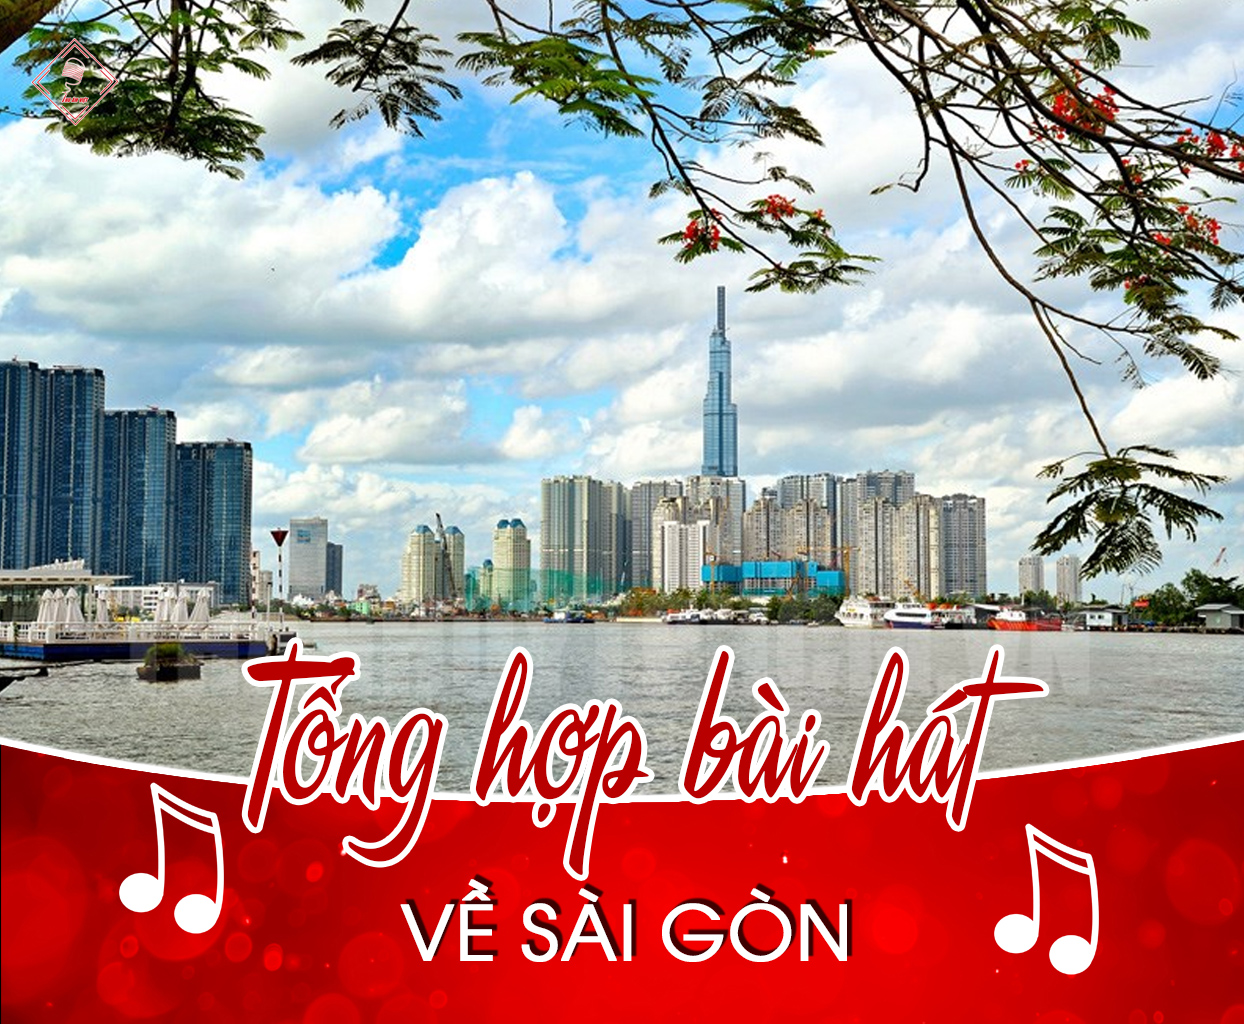 Tổng hợp các bài hát hay nhất về Sài Gòn TPHCM mà bạn chắc chắn phải nghe